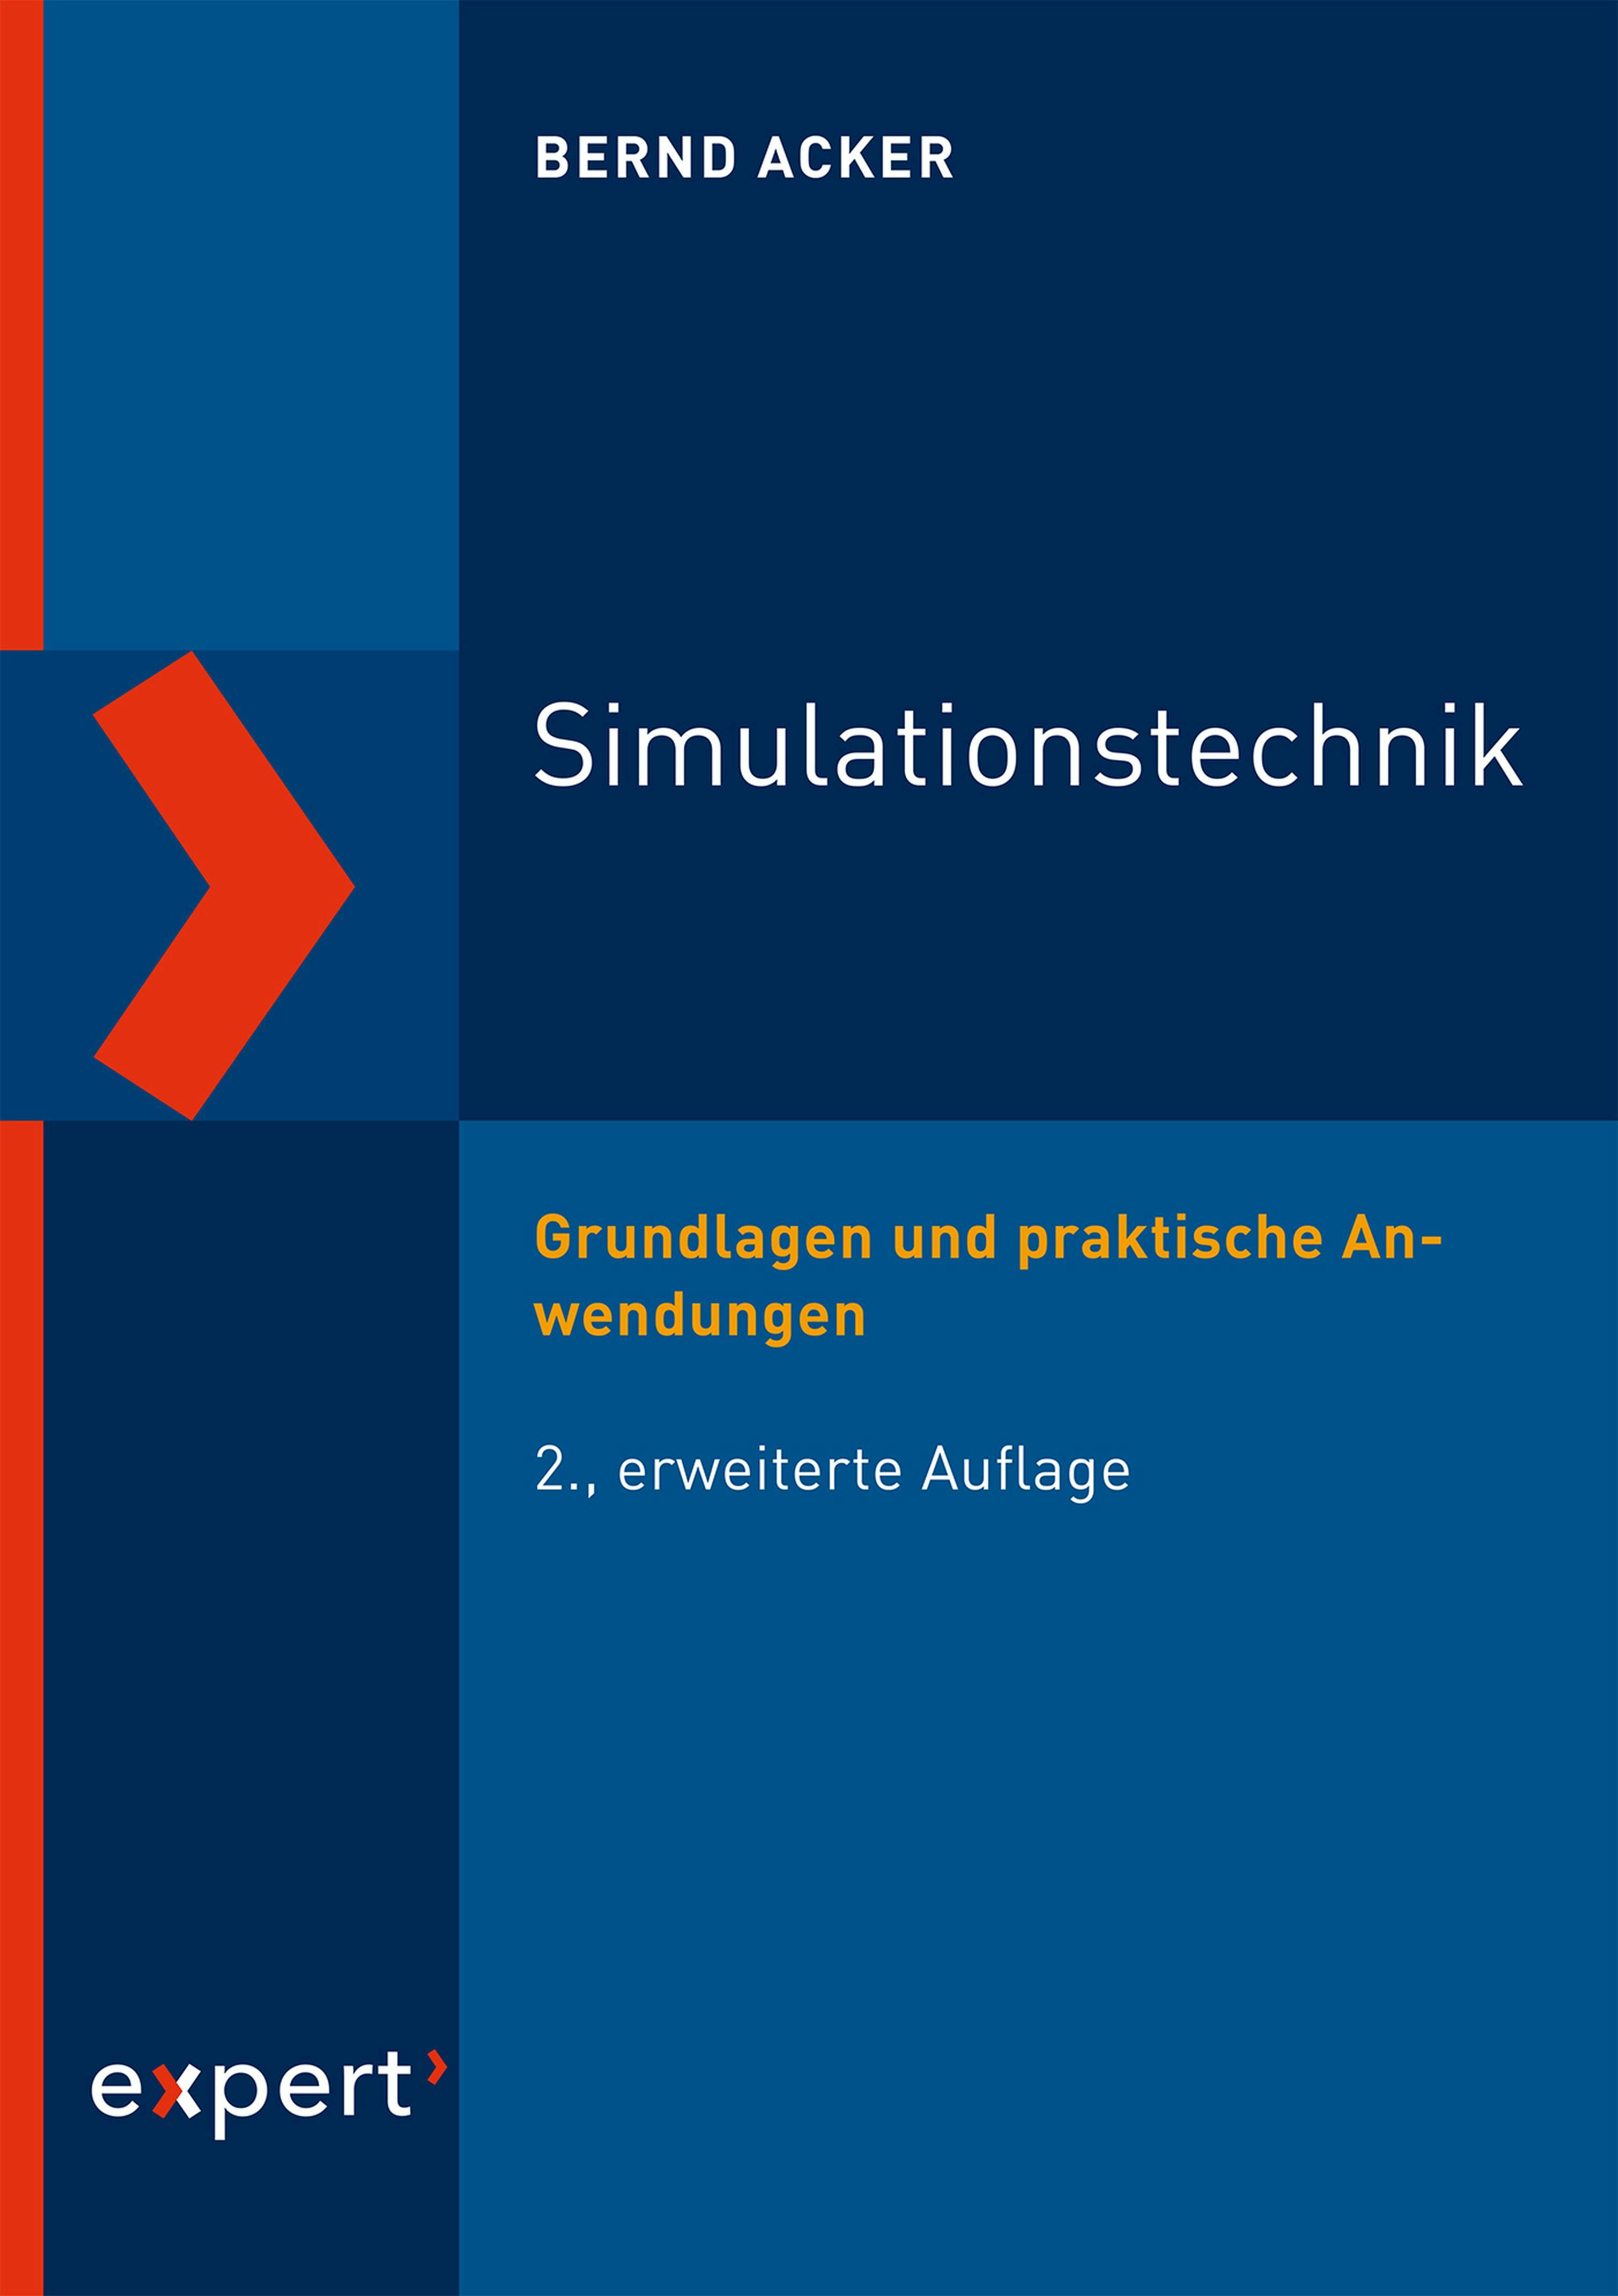 Simulationstechnik: Grundlagen und praktische Anwendungen - Bernd Acker